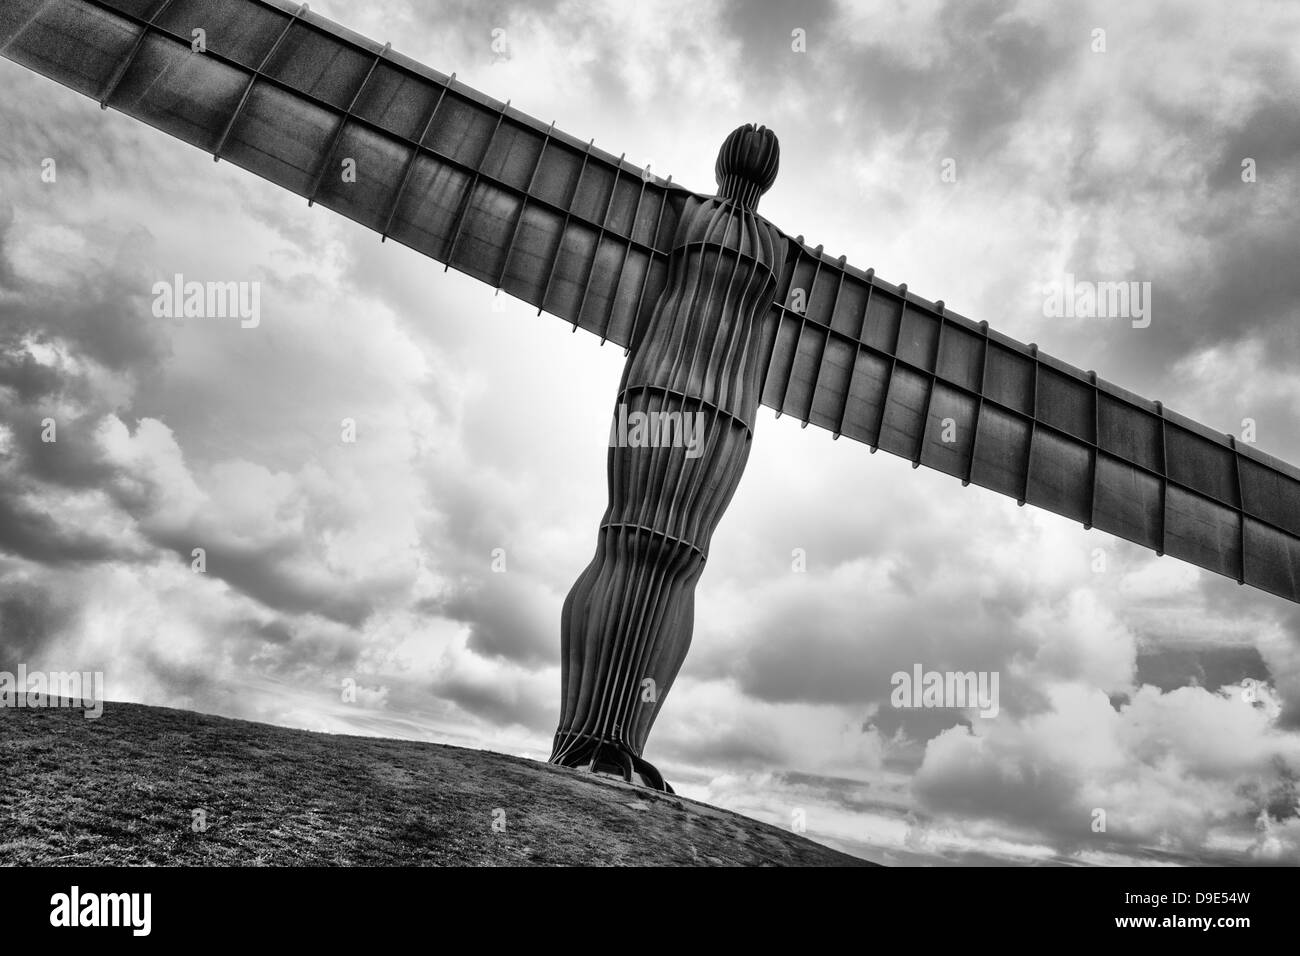 Engel des Nordens. von Antony Gormley 20 Meter hohen Ikonischen arbeiten in Gateshead, Tyne und Wear, England, in der Nähe der A 1. Stockfoto